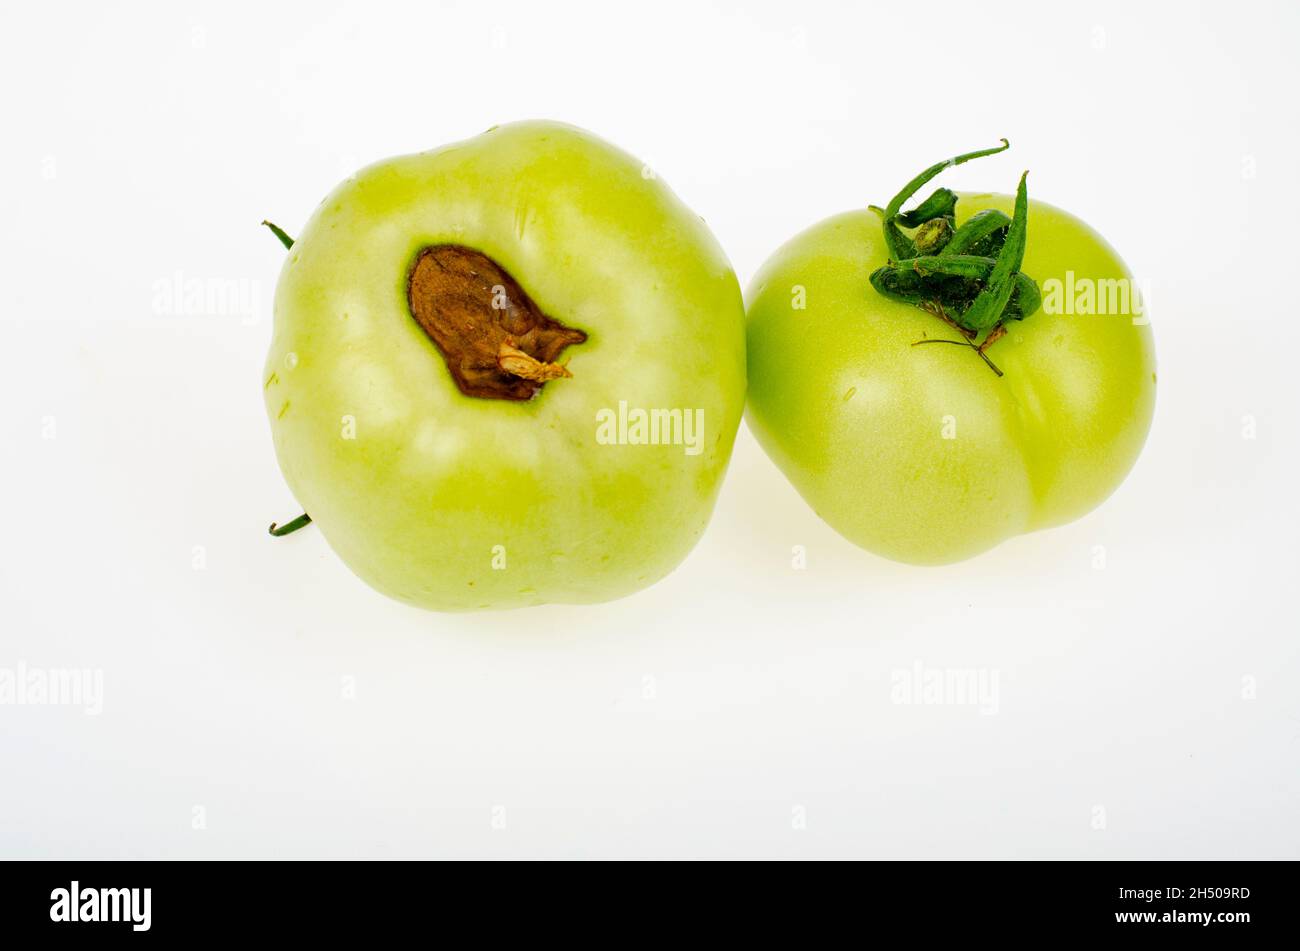 Malattie dei pomodori, marciume superiore su frutta. Foto studio. Foto Stock